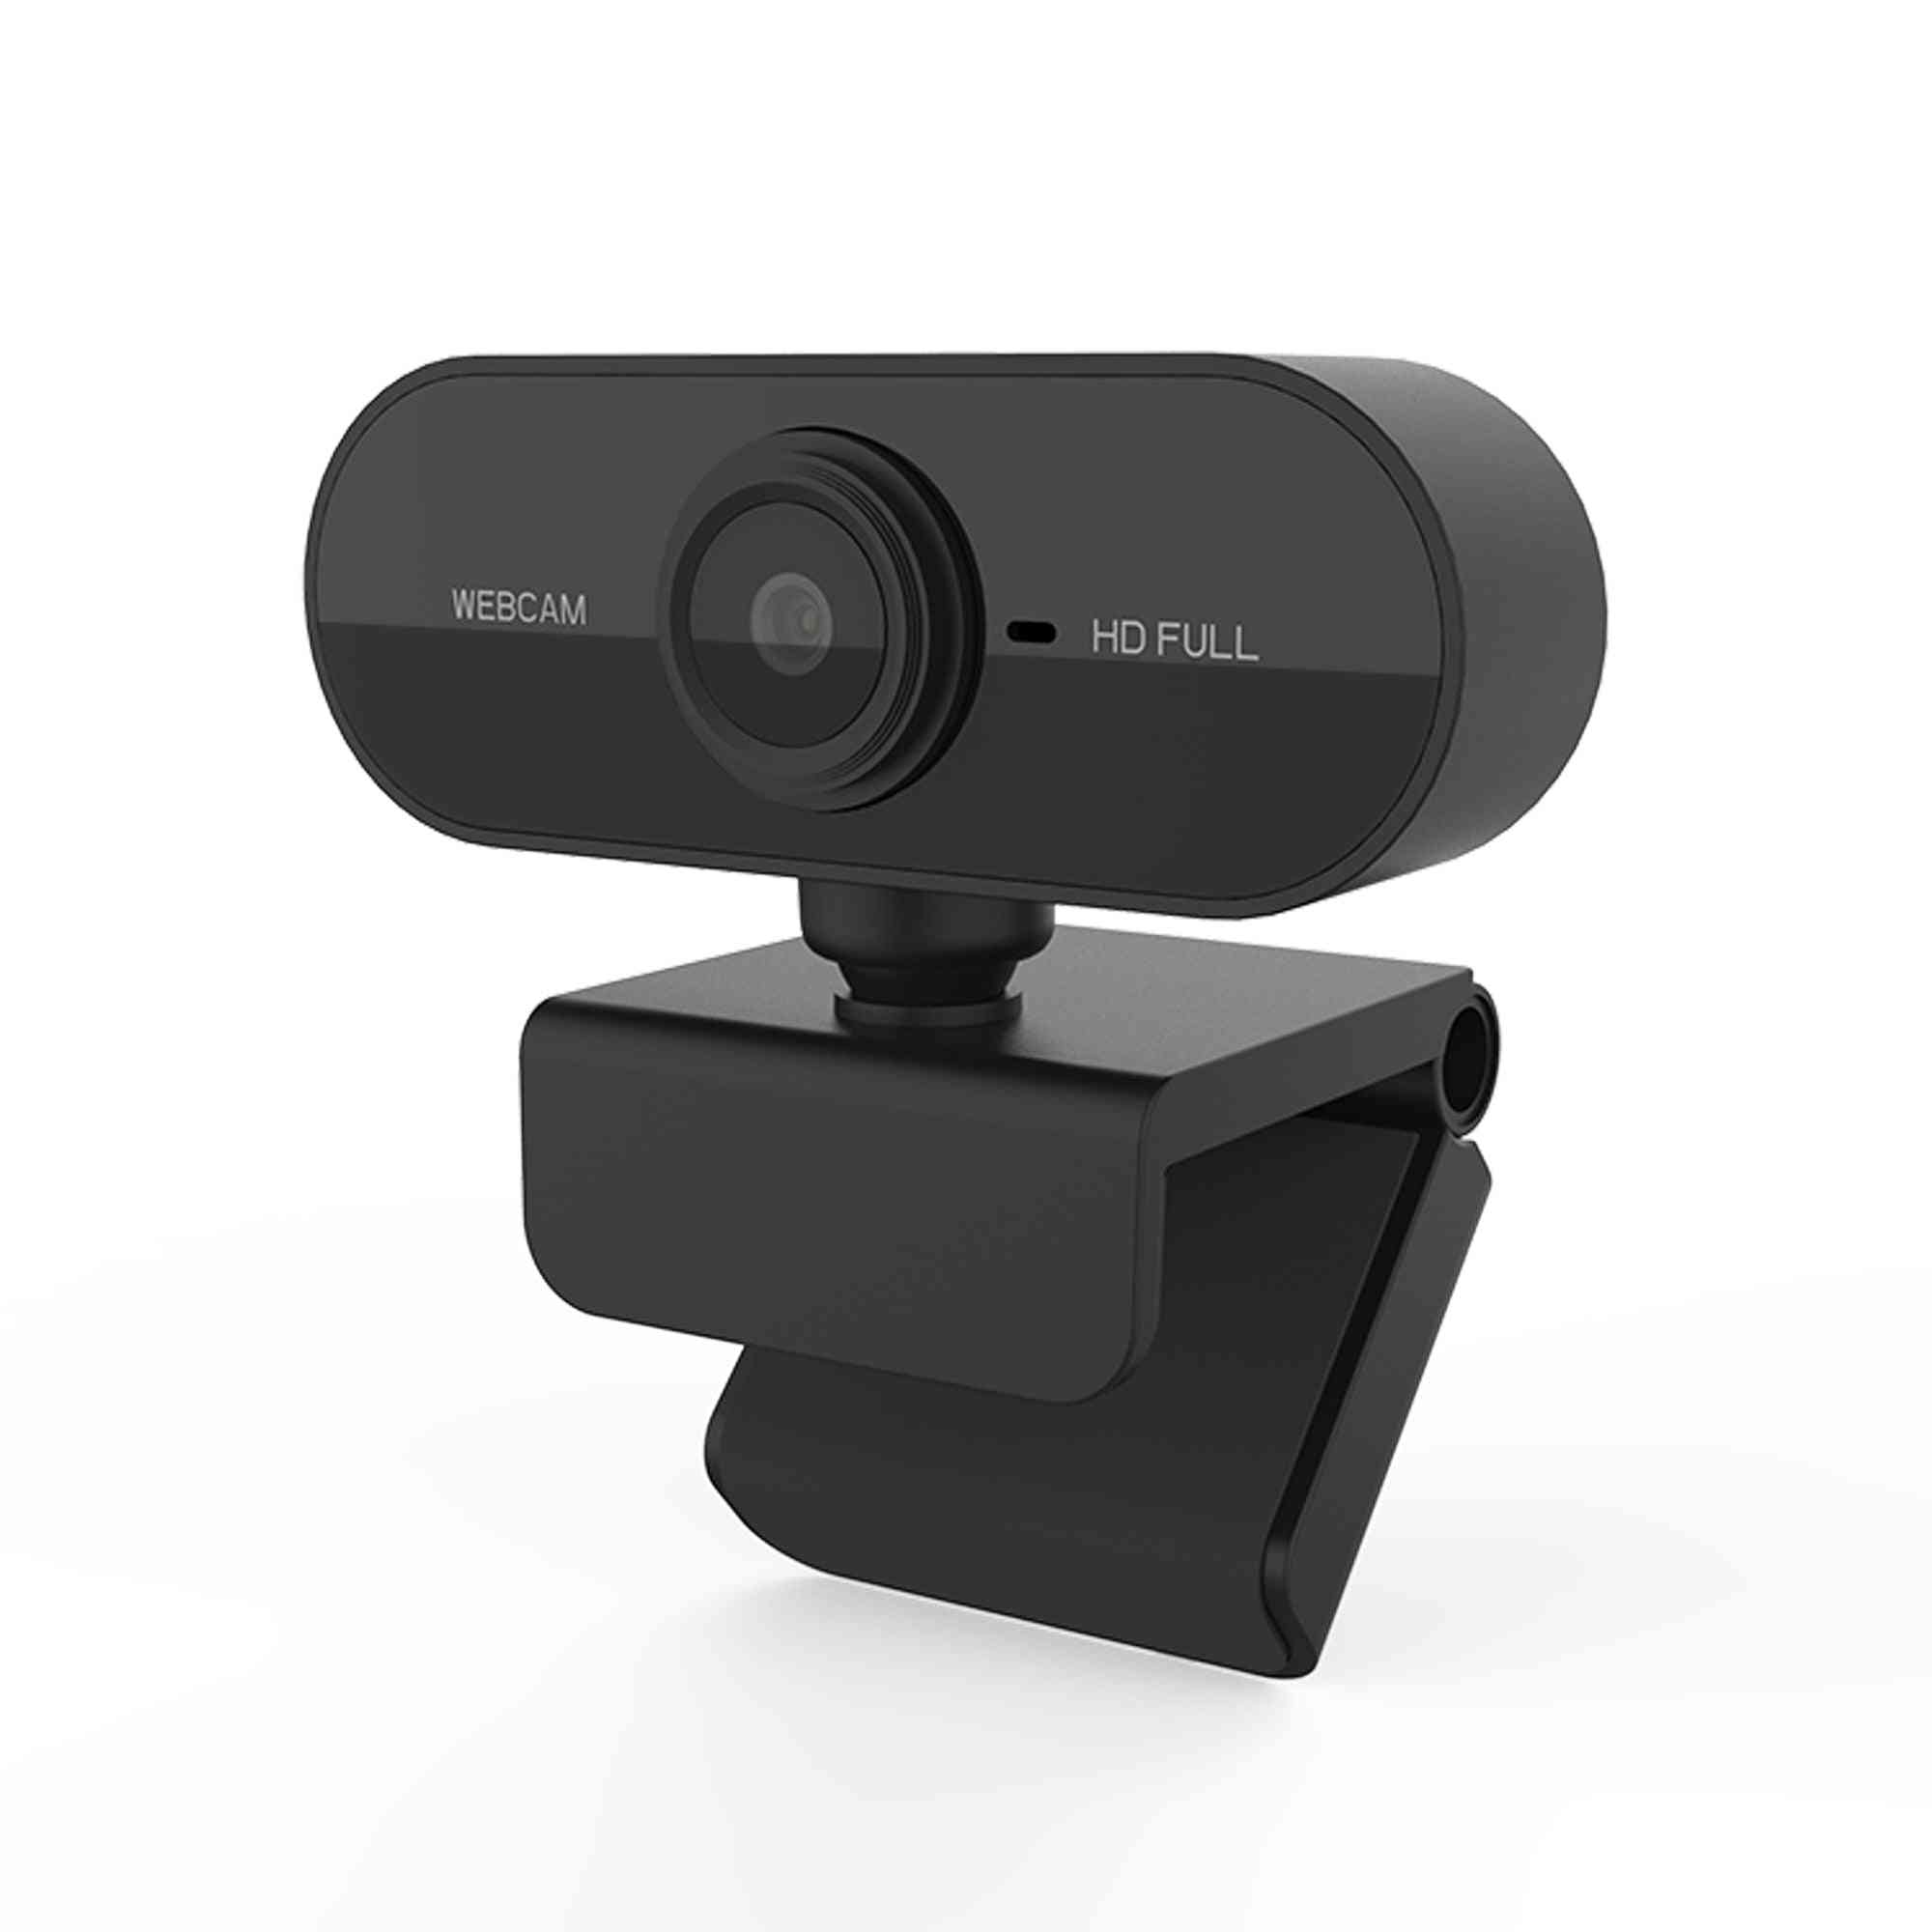 Caméra Web Full HD 1080p, mise au point automatique, mini-caméra Web avec microphone